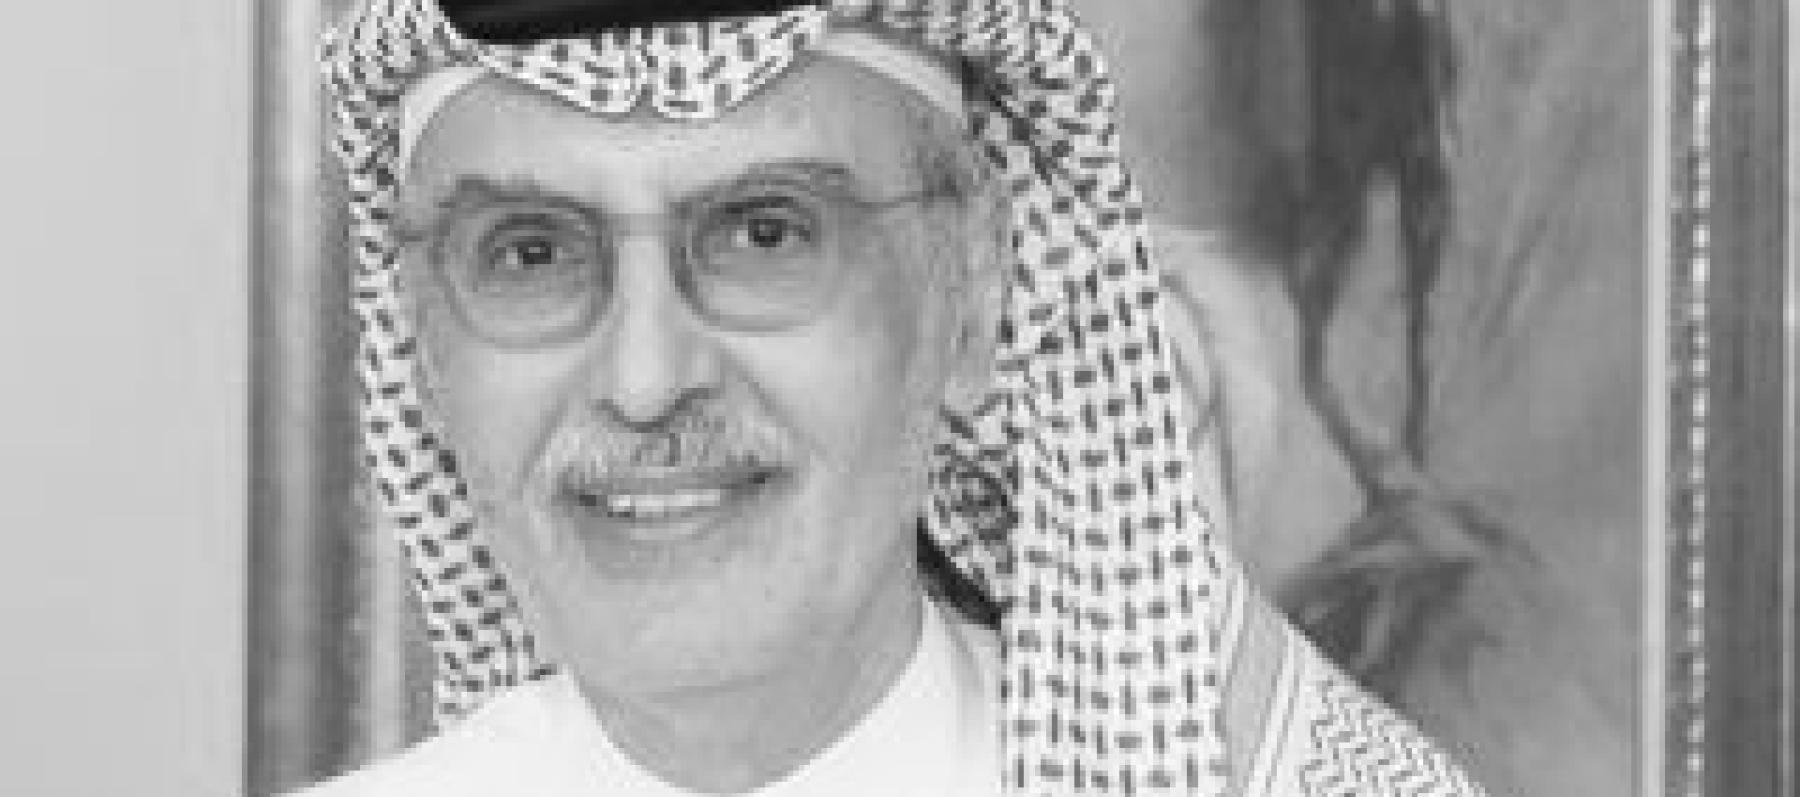 الأمير الشاعر الراحل بدر بن عبدالمحسن - صورة معدلة